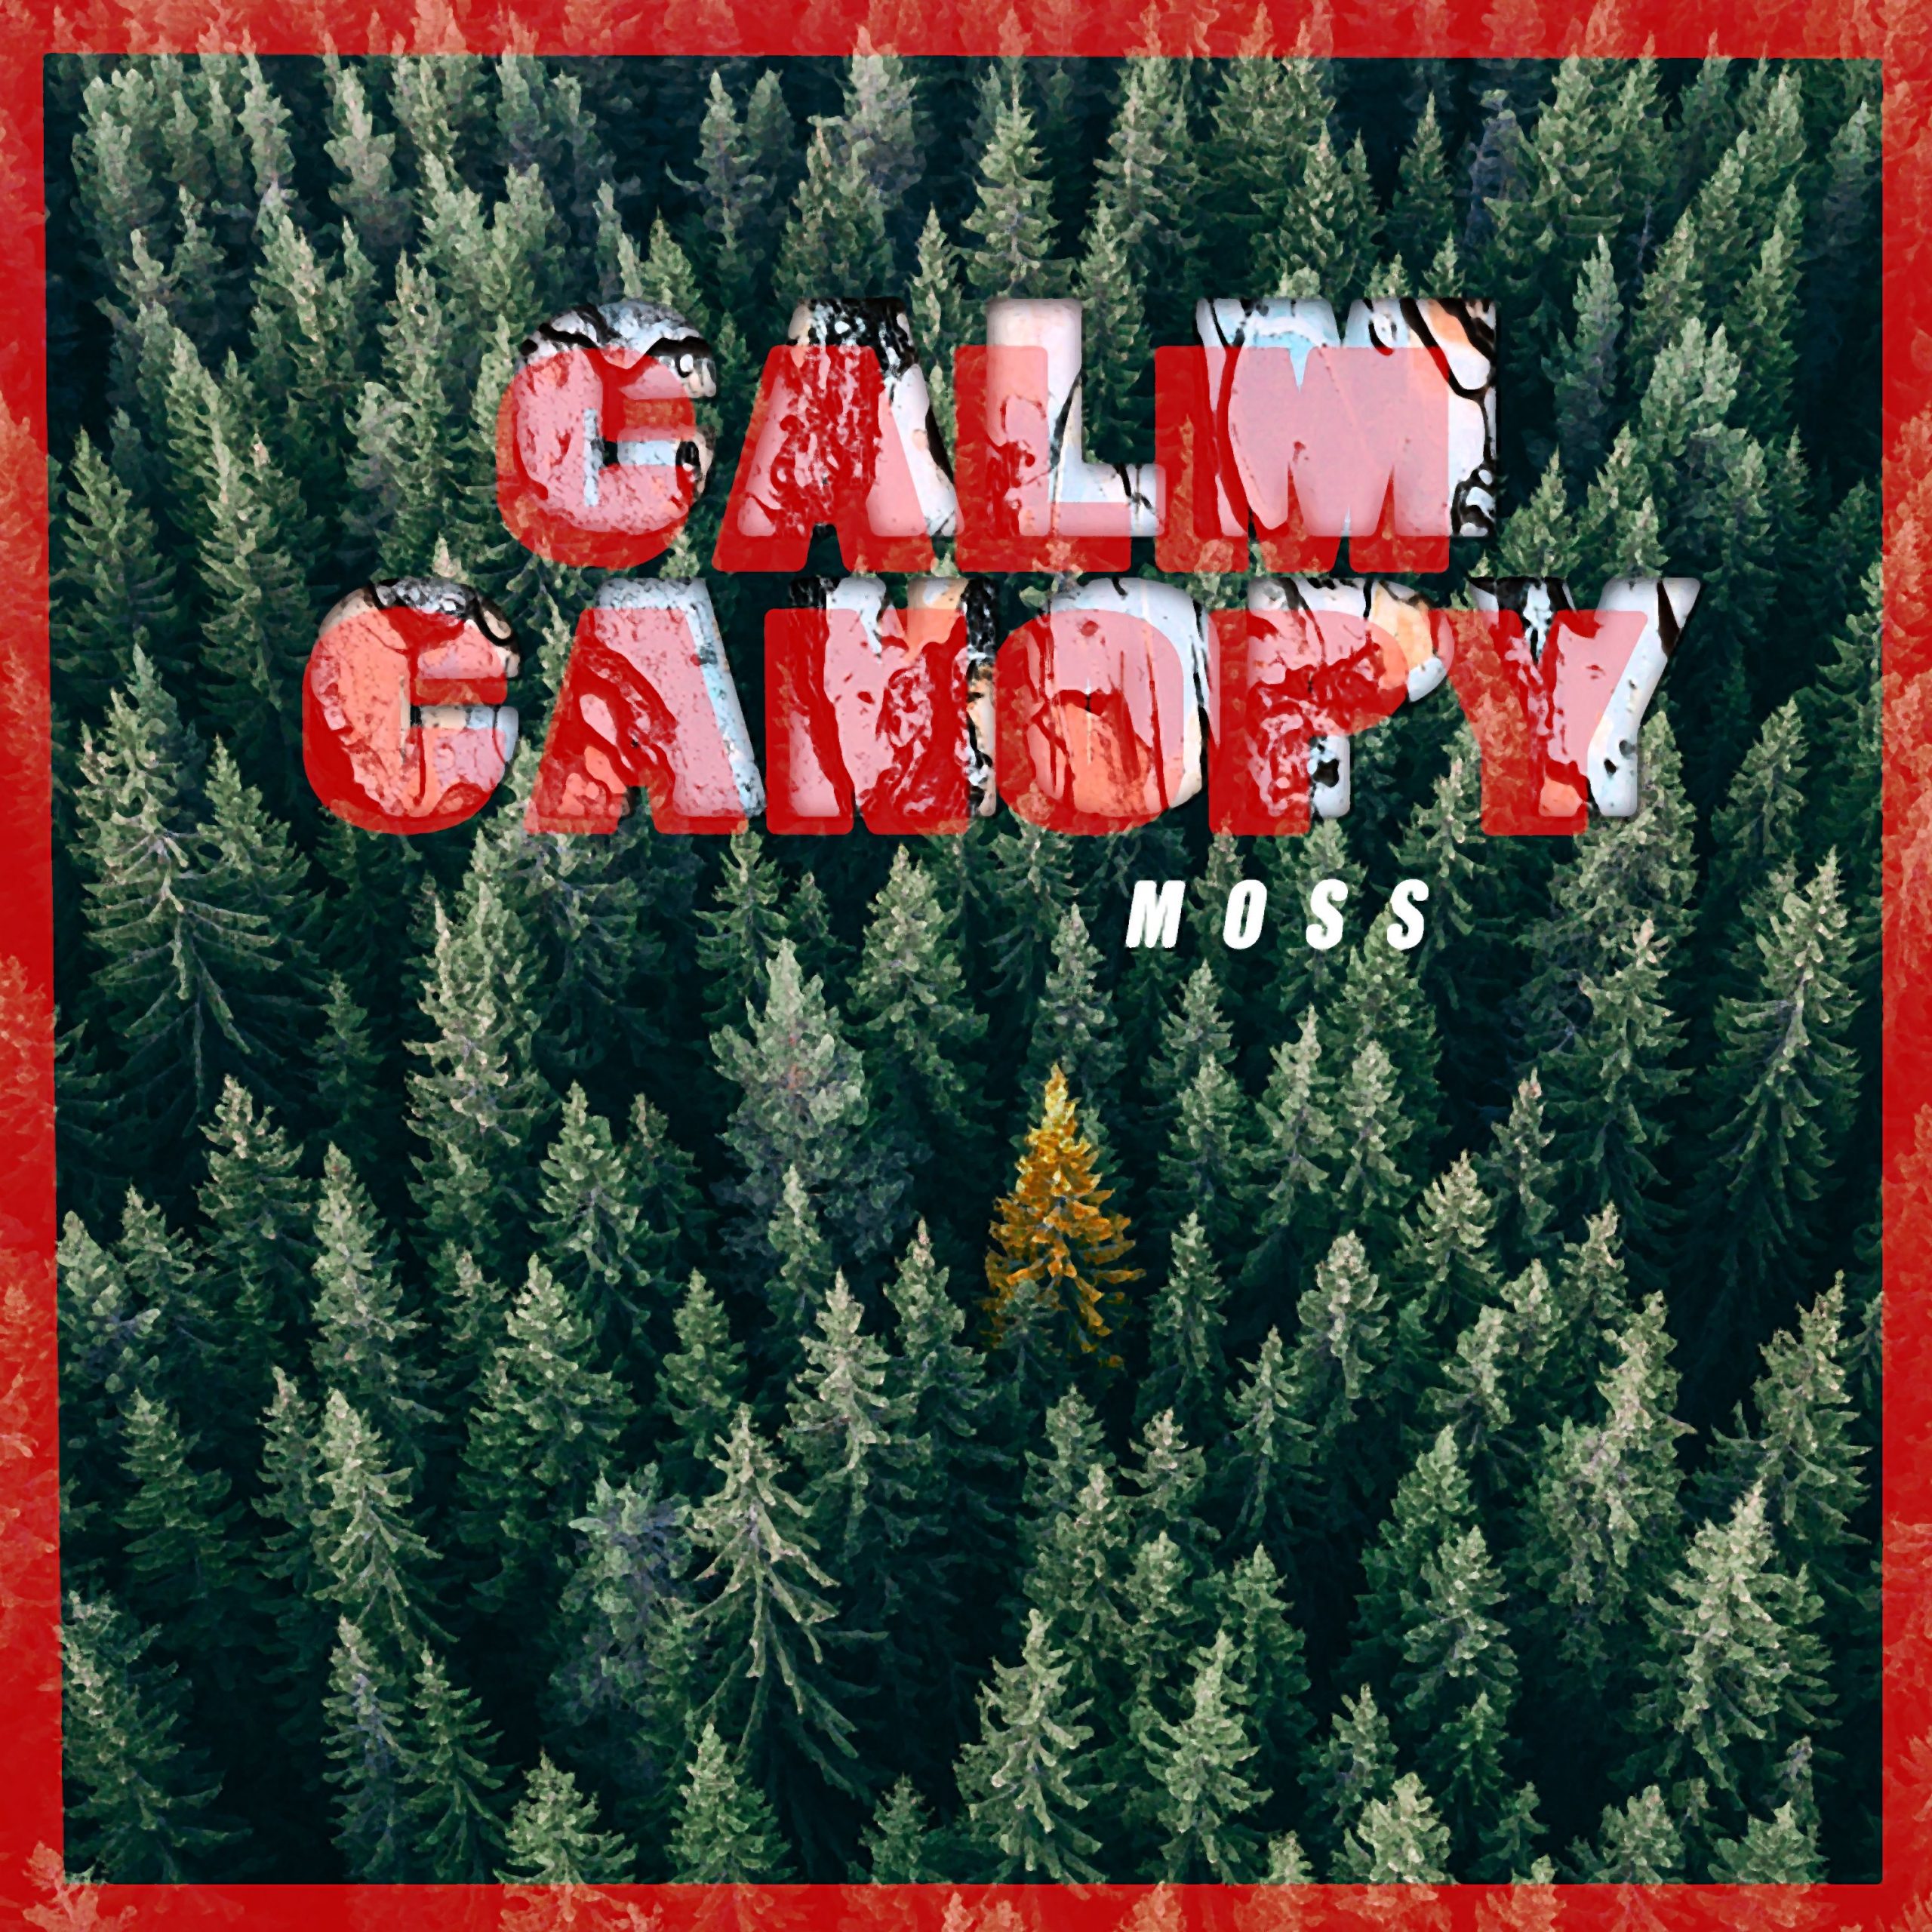 moss - calm canopy - canada - indie - indie music - indie pop - indie rock - indie folk - new music - music blog - wolf in a suit - wolfinasuit - wolf in a suit blog - wolf in a suit music blog